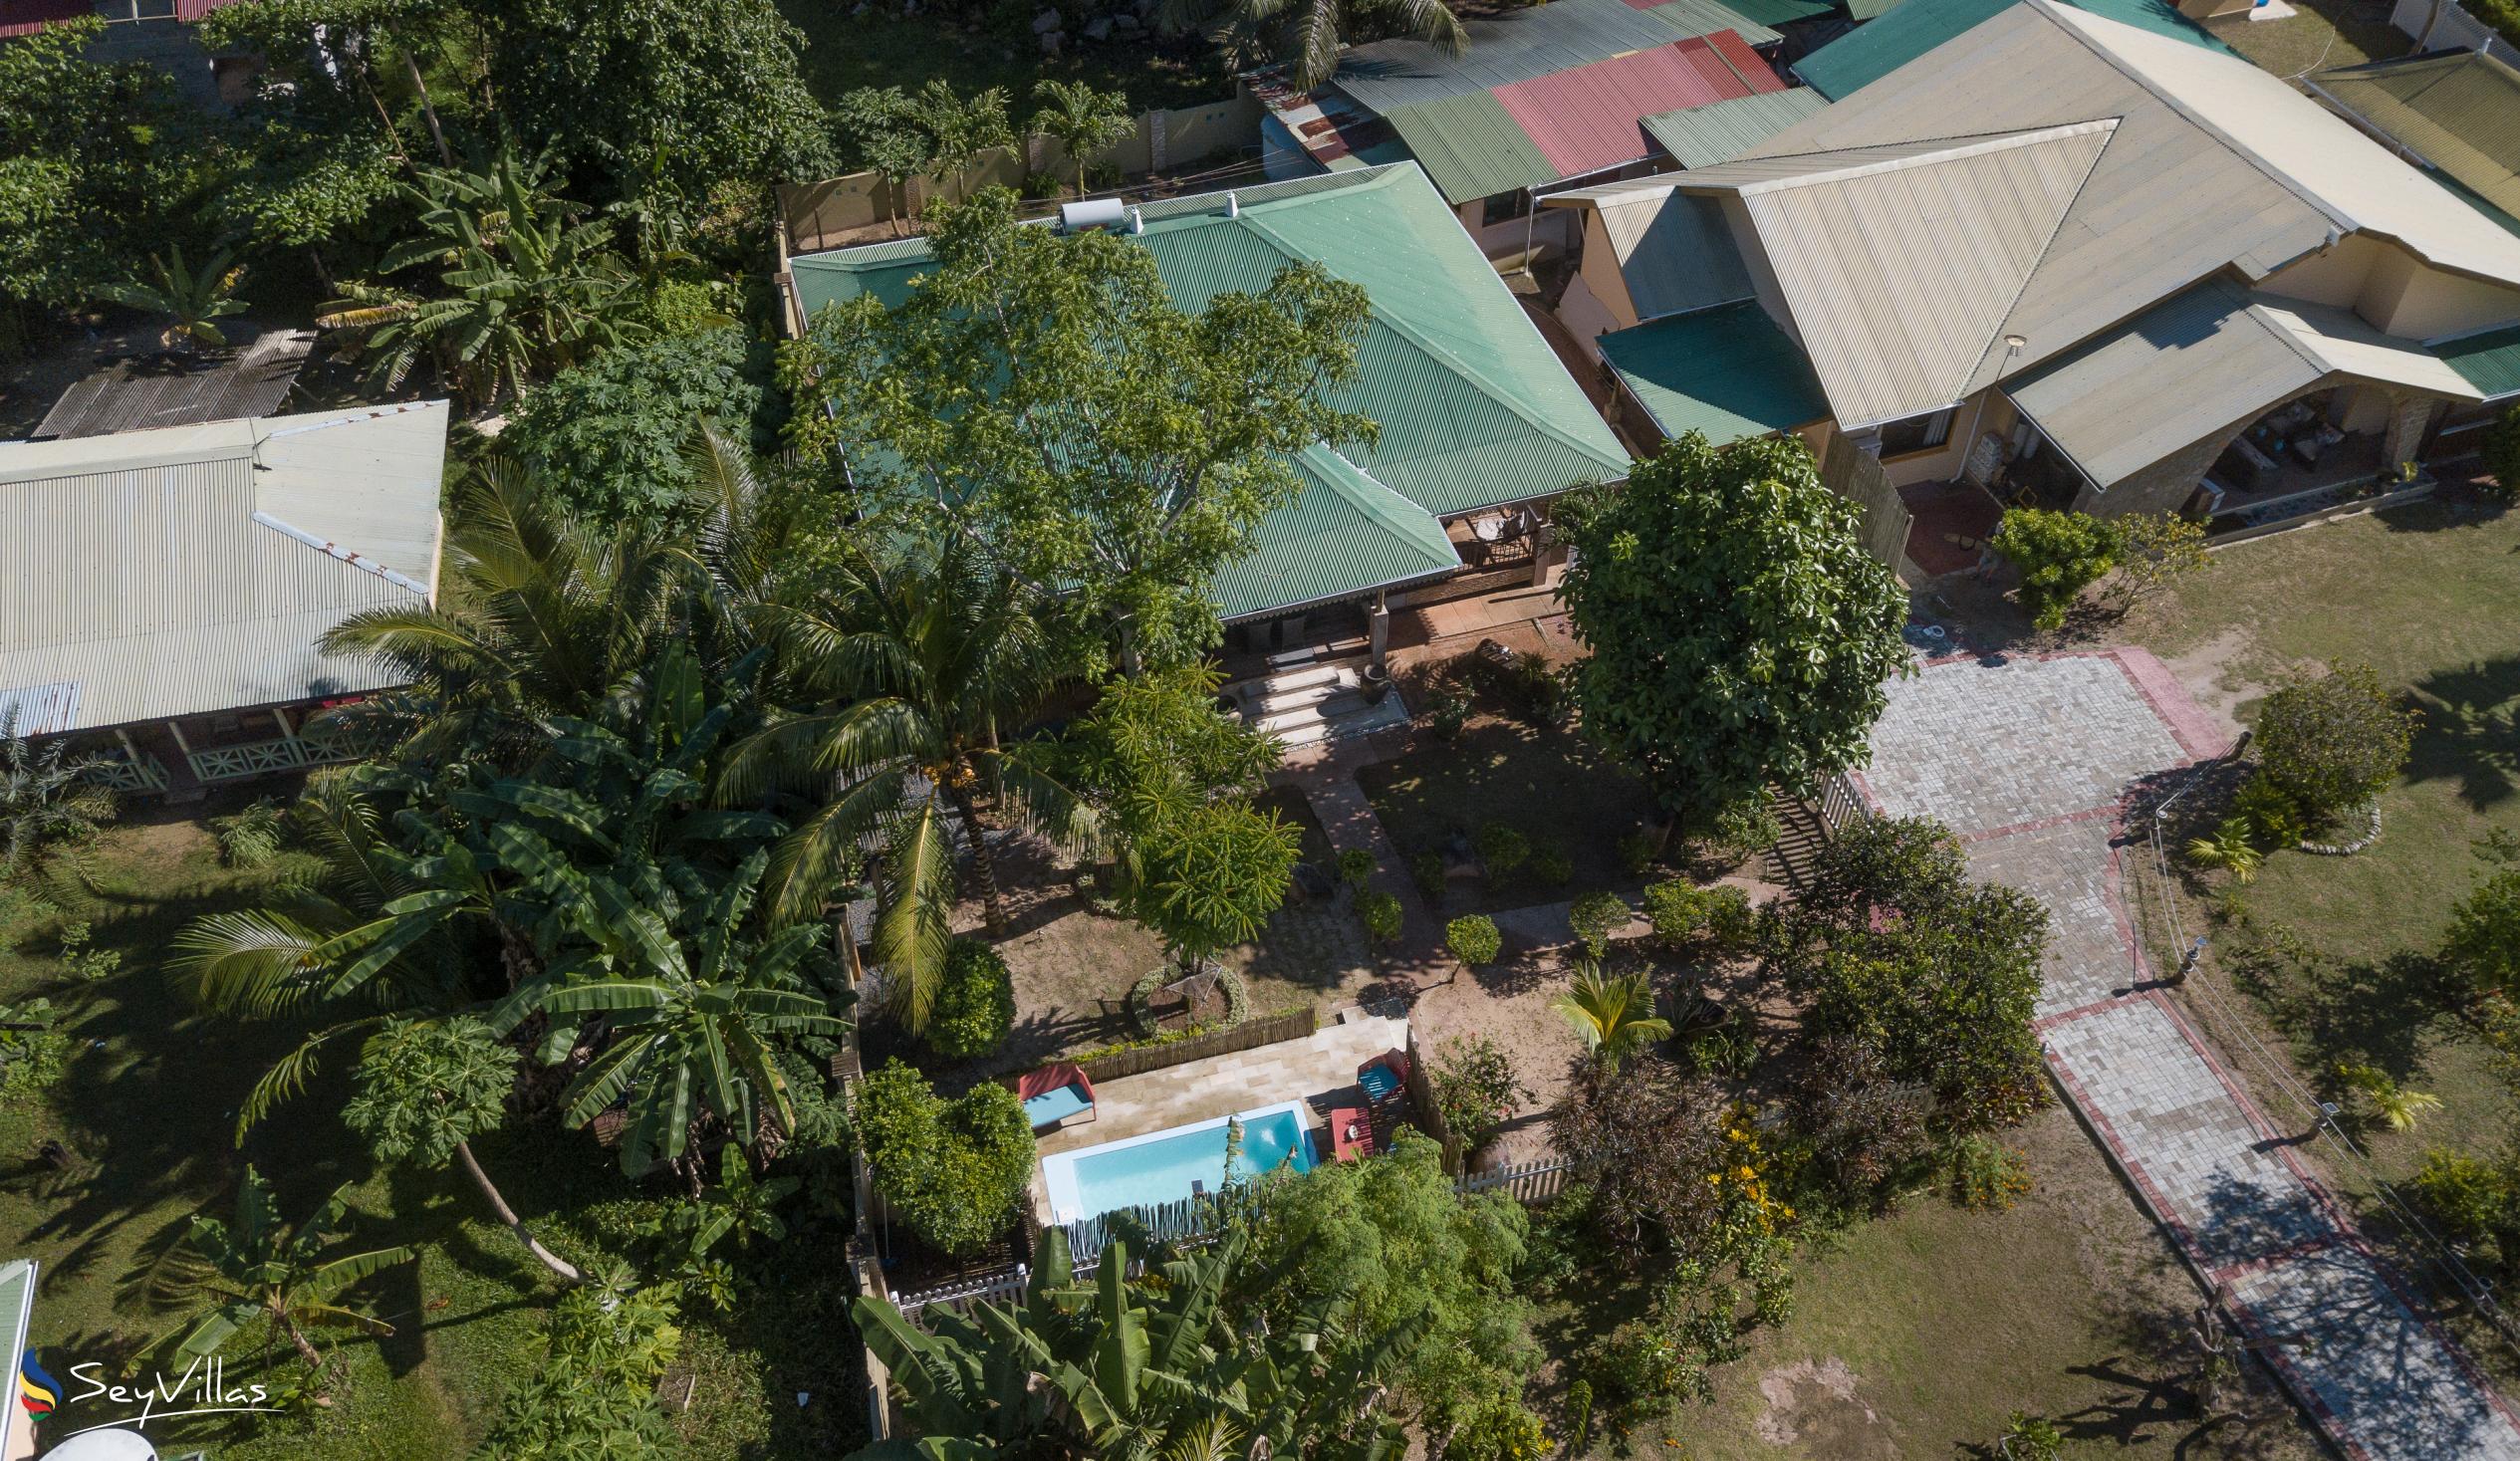 Photo 75: Casa de Leela - 2-Bedroom Luxury Bungalow with Private Plunge Pool - La Digue (Seychelles)